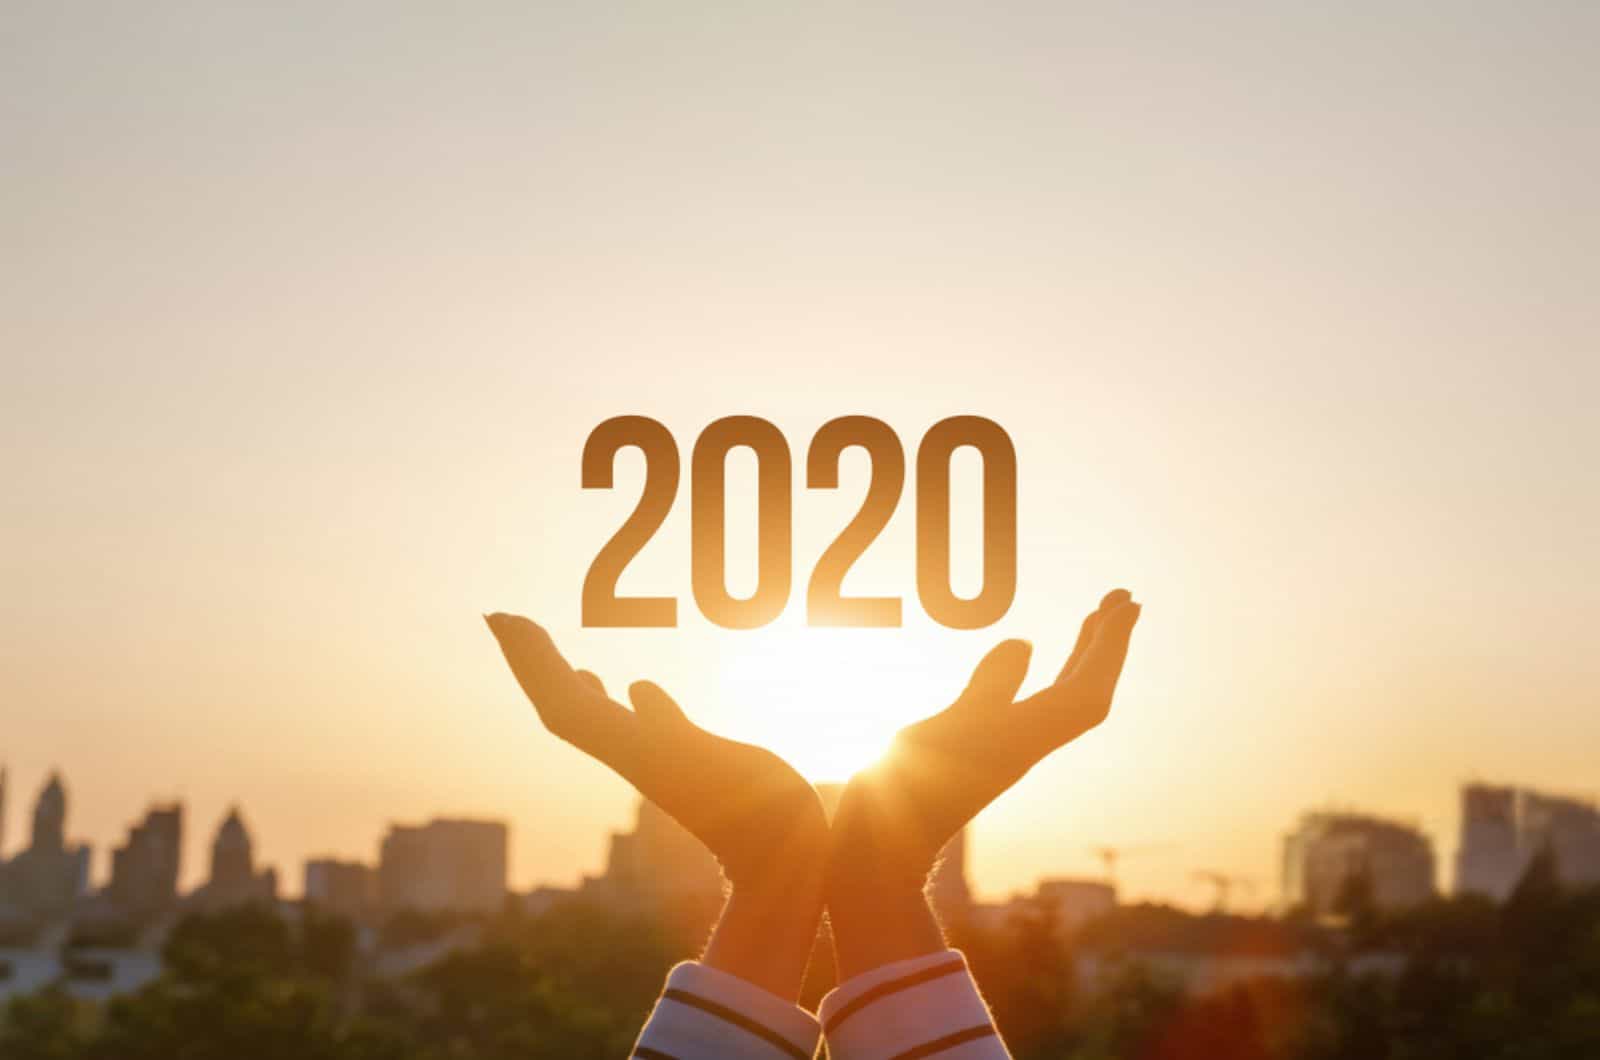 Les mains montrent 2020 sur fond de coucher de soleil